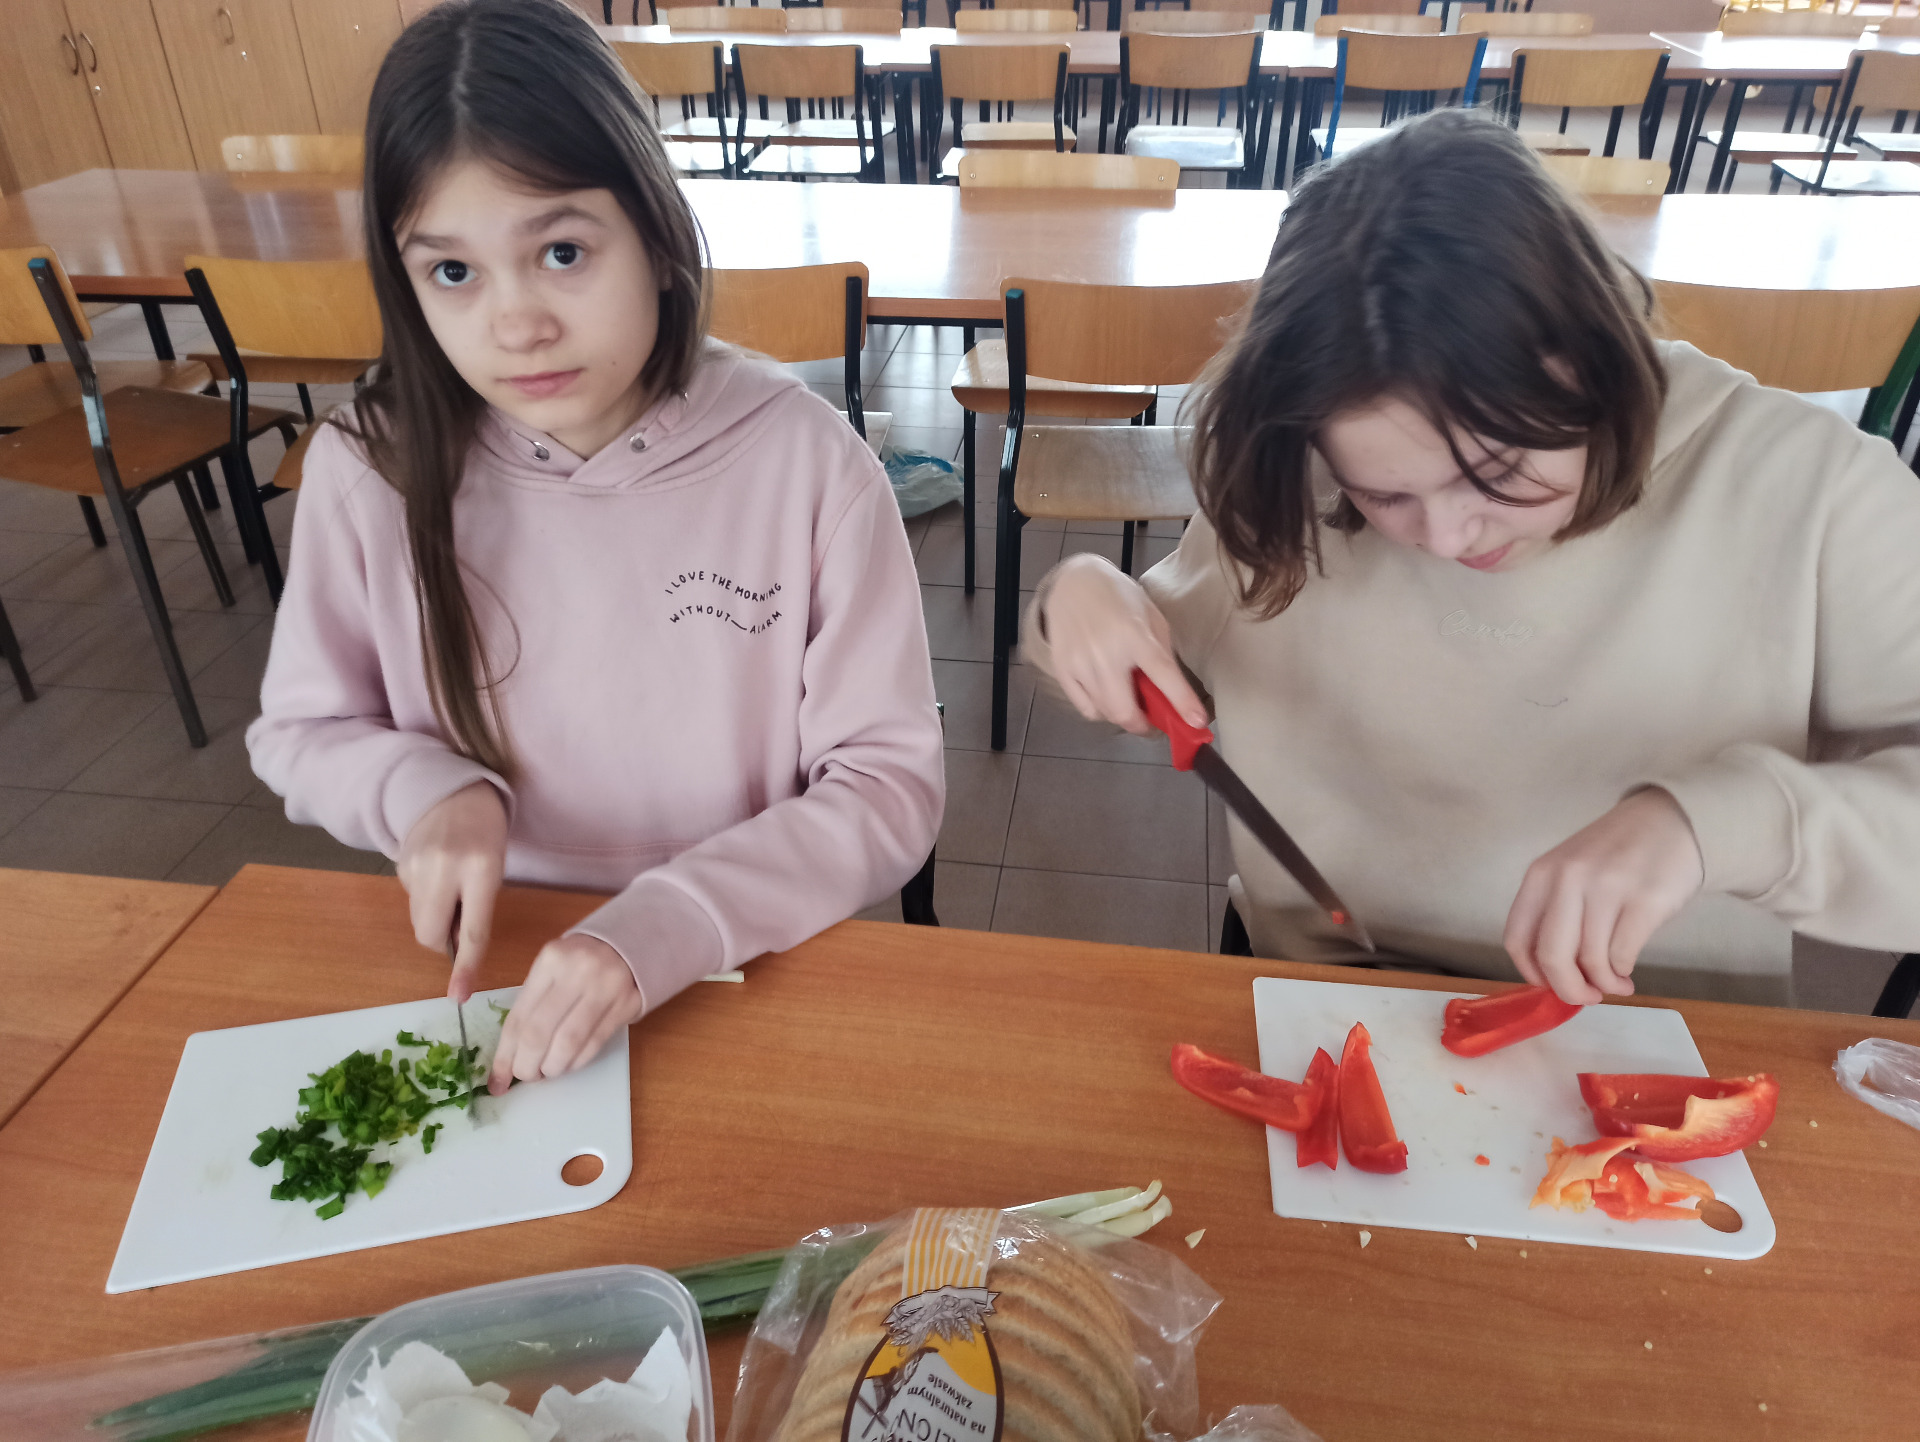 Uczniowie przygotowują posiłek